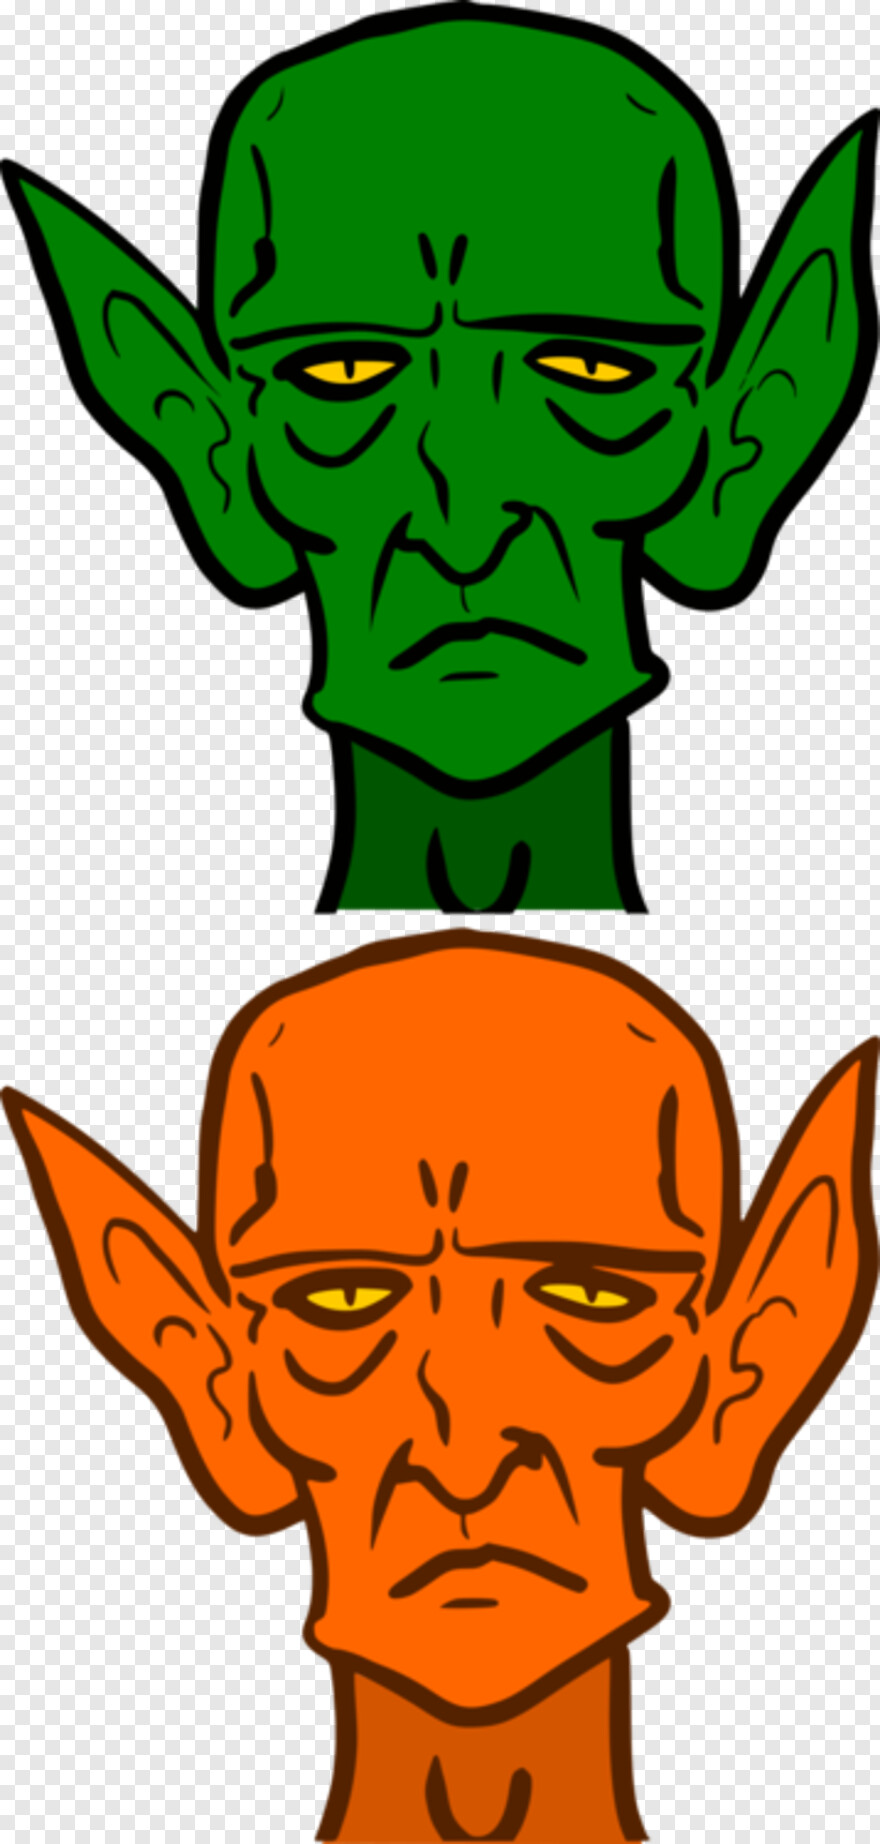 green-goblin # 1058163